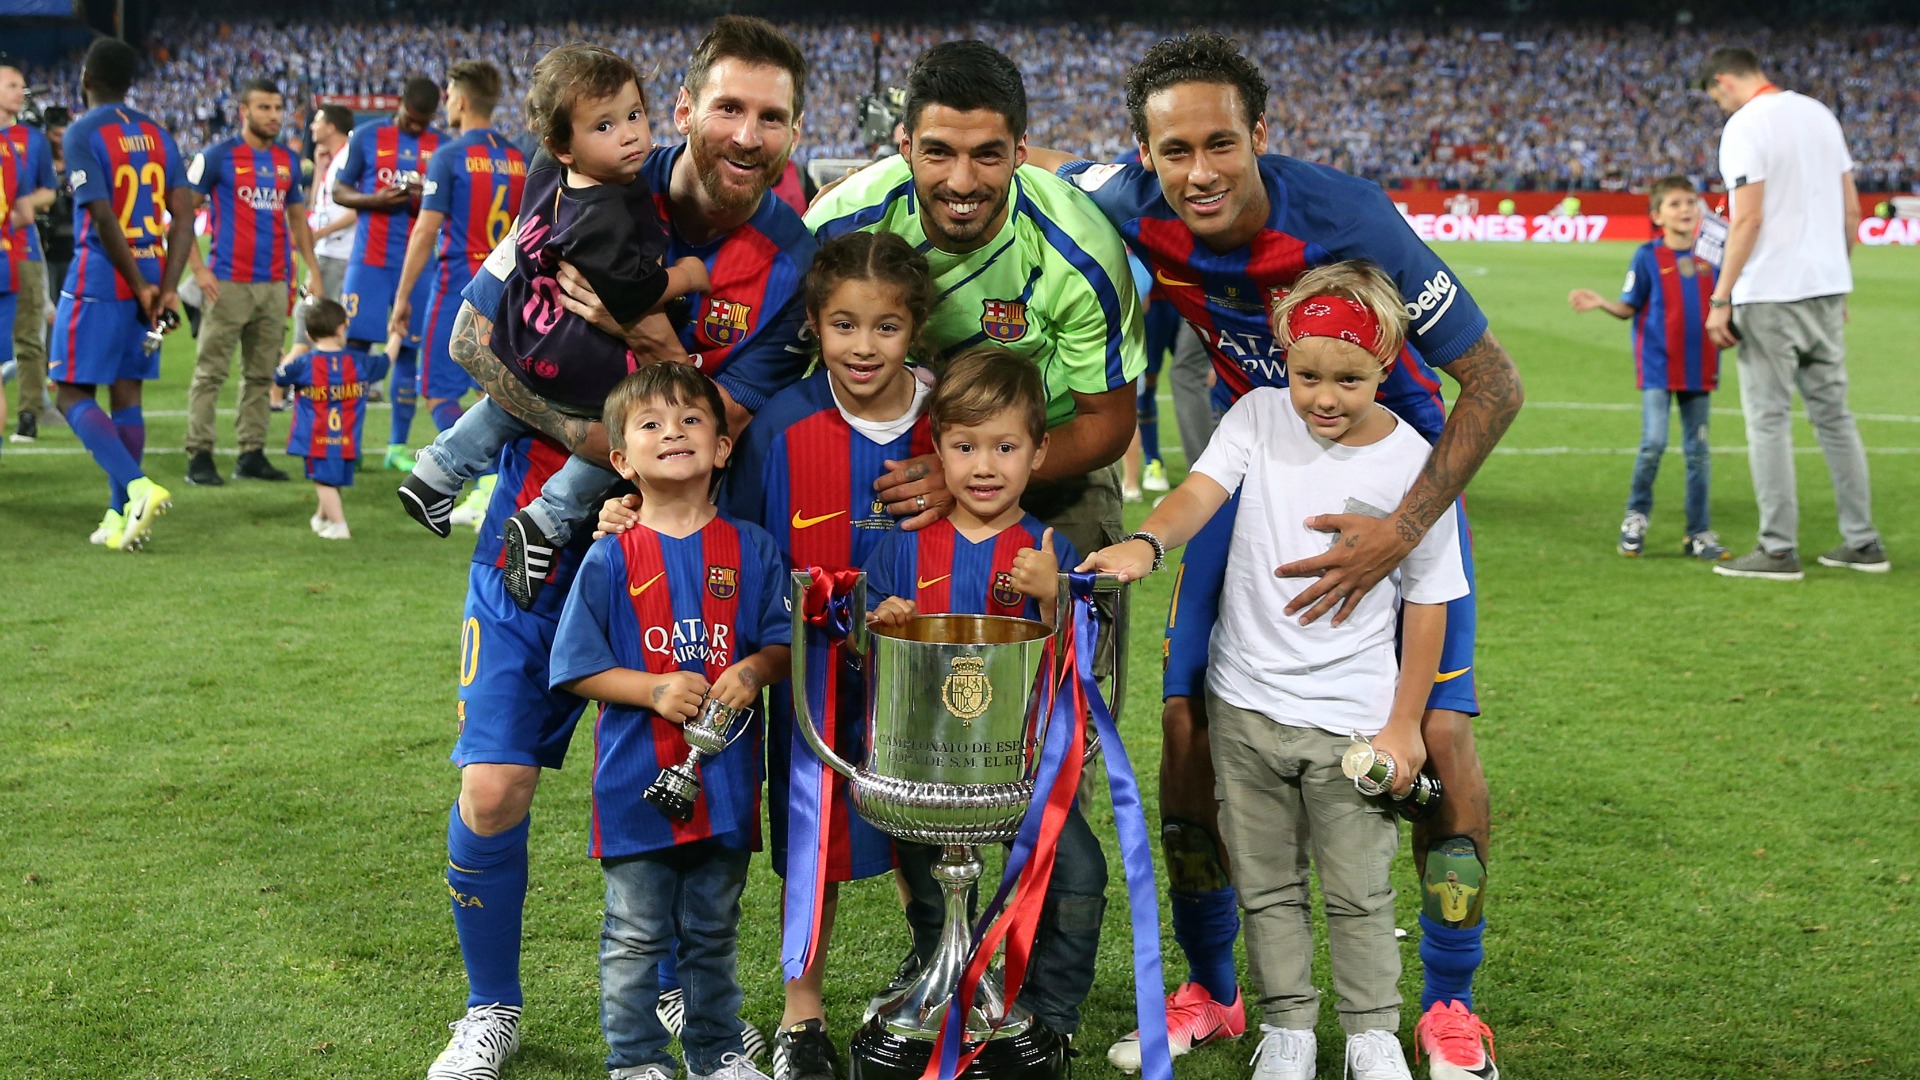 El Barça gana la Copa del Rey de fútbol por tercer año consecutivo